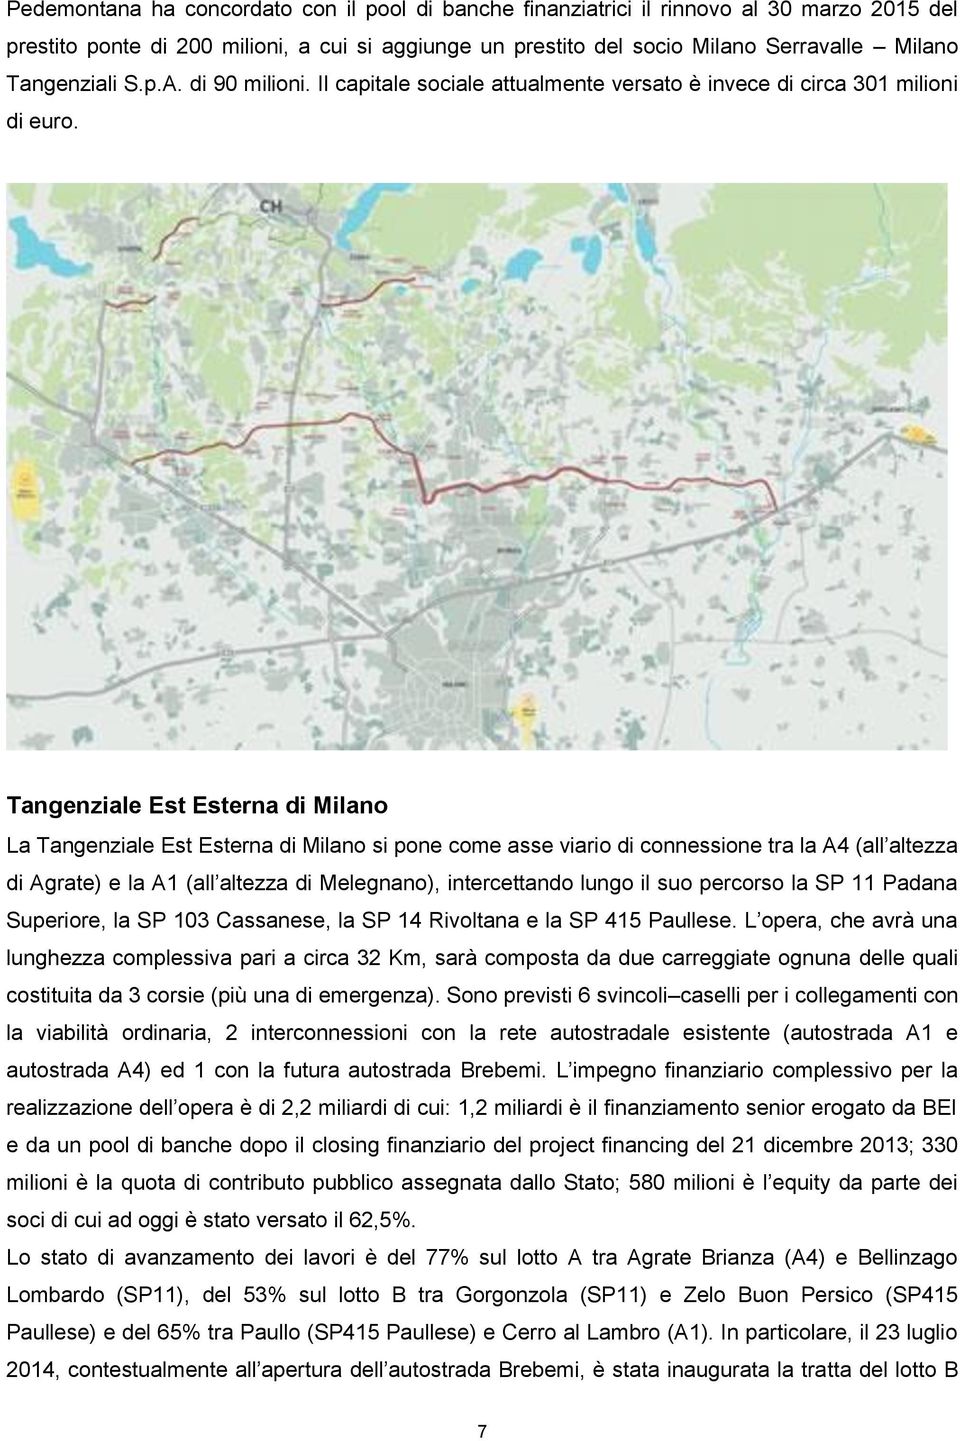 Tangenziale Est Esterna di Milano La Tangenziale Est Esterna di Milano si pone come asse viario di connessione tra la A4 (all altezza di Agrate) e la A1 (all altezza di Melegnano), intercettando